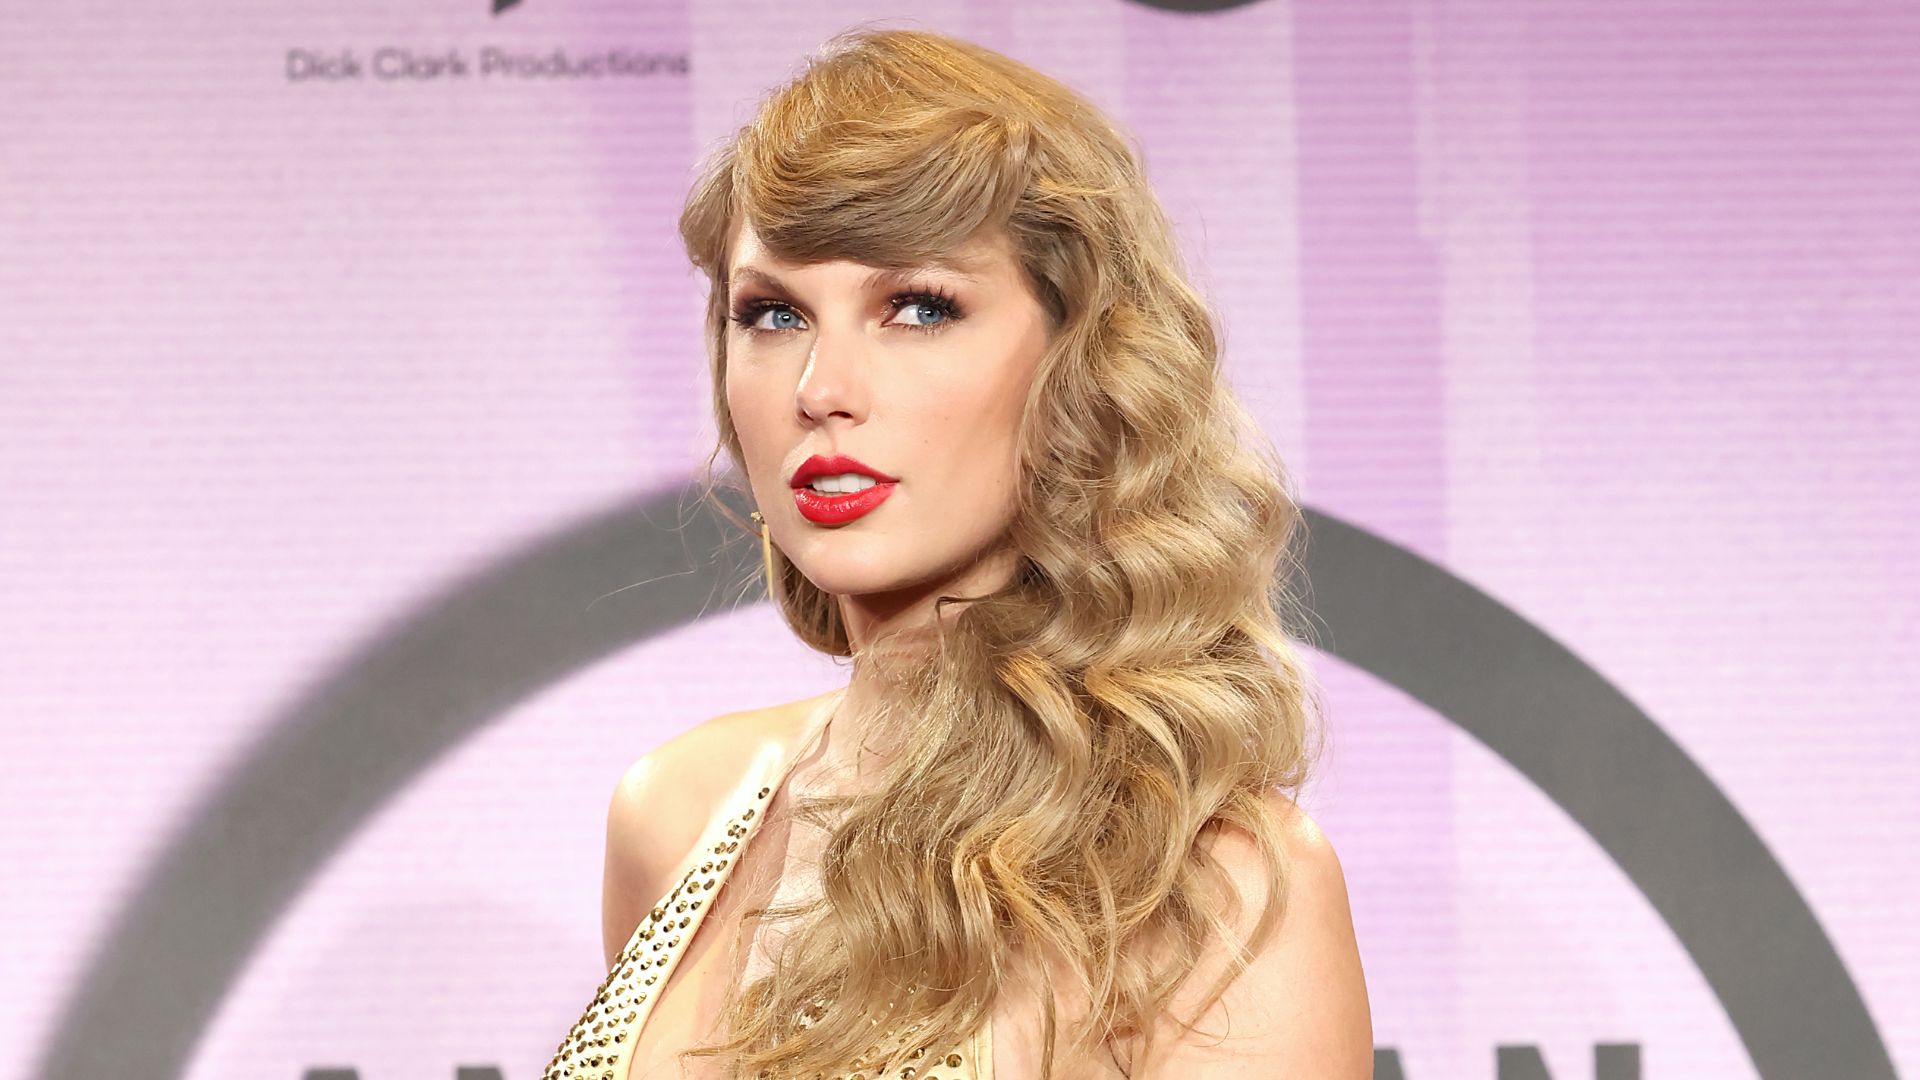 Taylor Swift: The Eras Tour est une machine à imprimer de l’argent